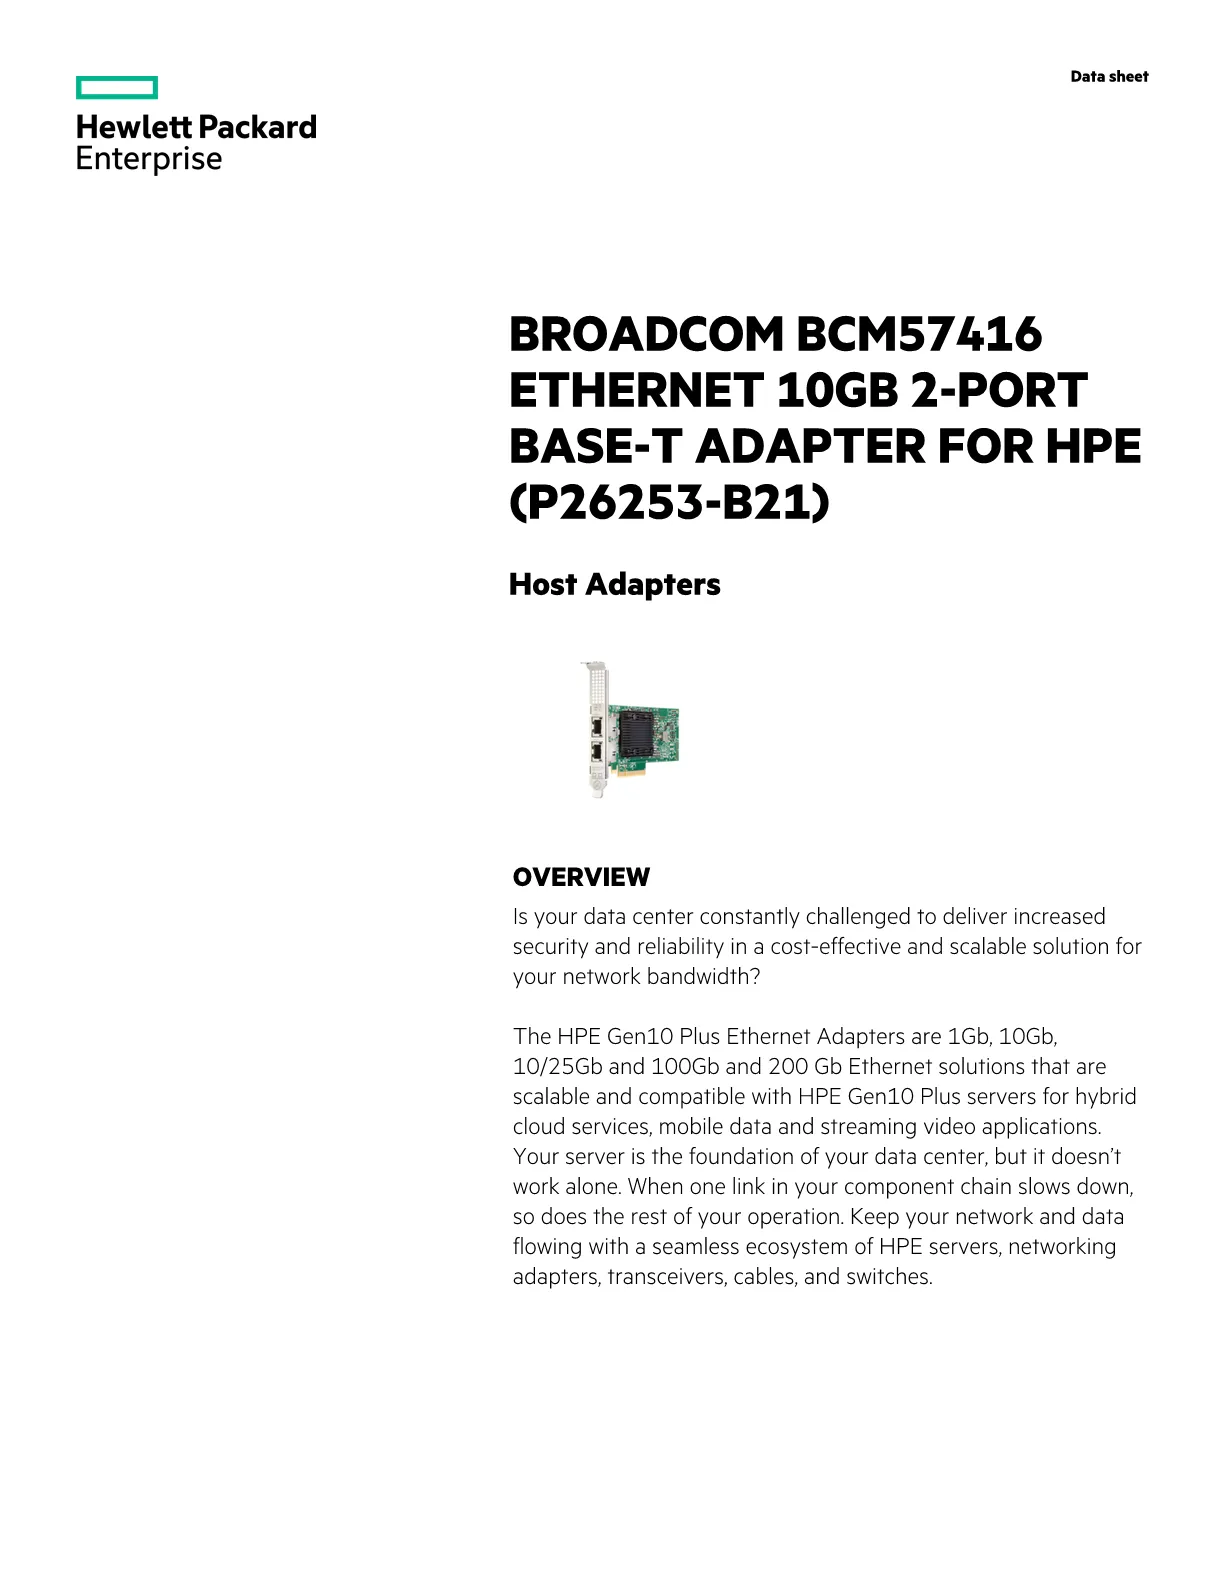 Hewlett-Packard Enterprise Broadcom BCM57416 Ethernet 10GB 2-port